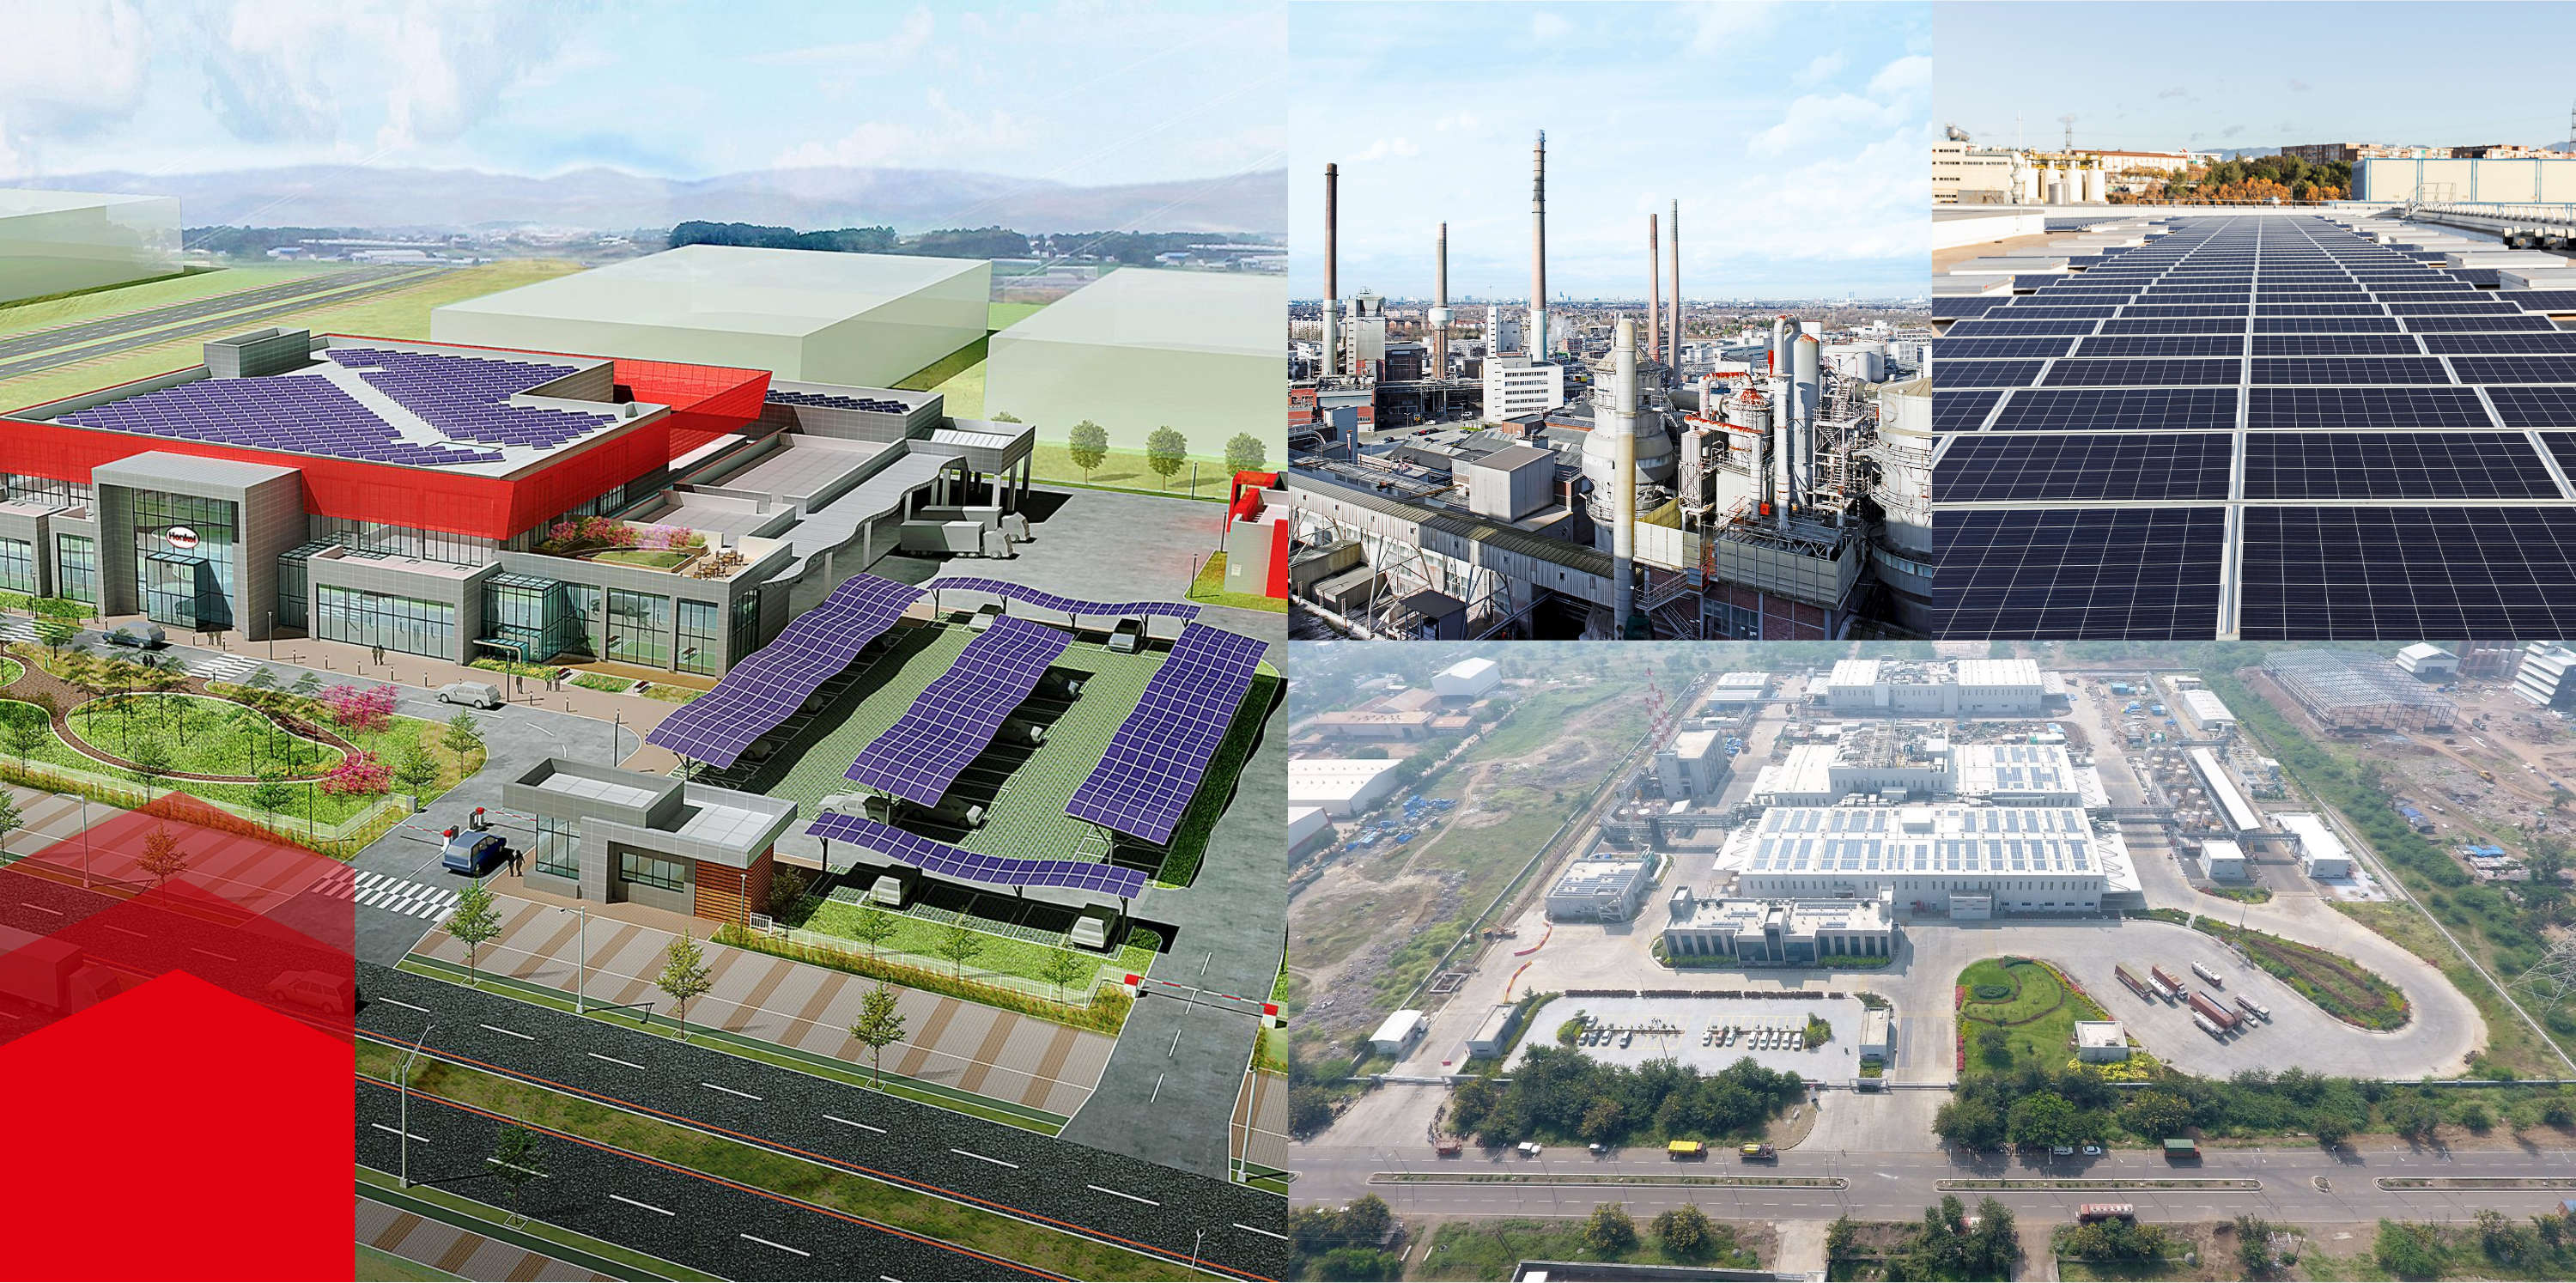 Collage de fotos de edificios con paneles solares y grandes fábricas